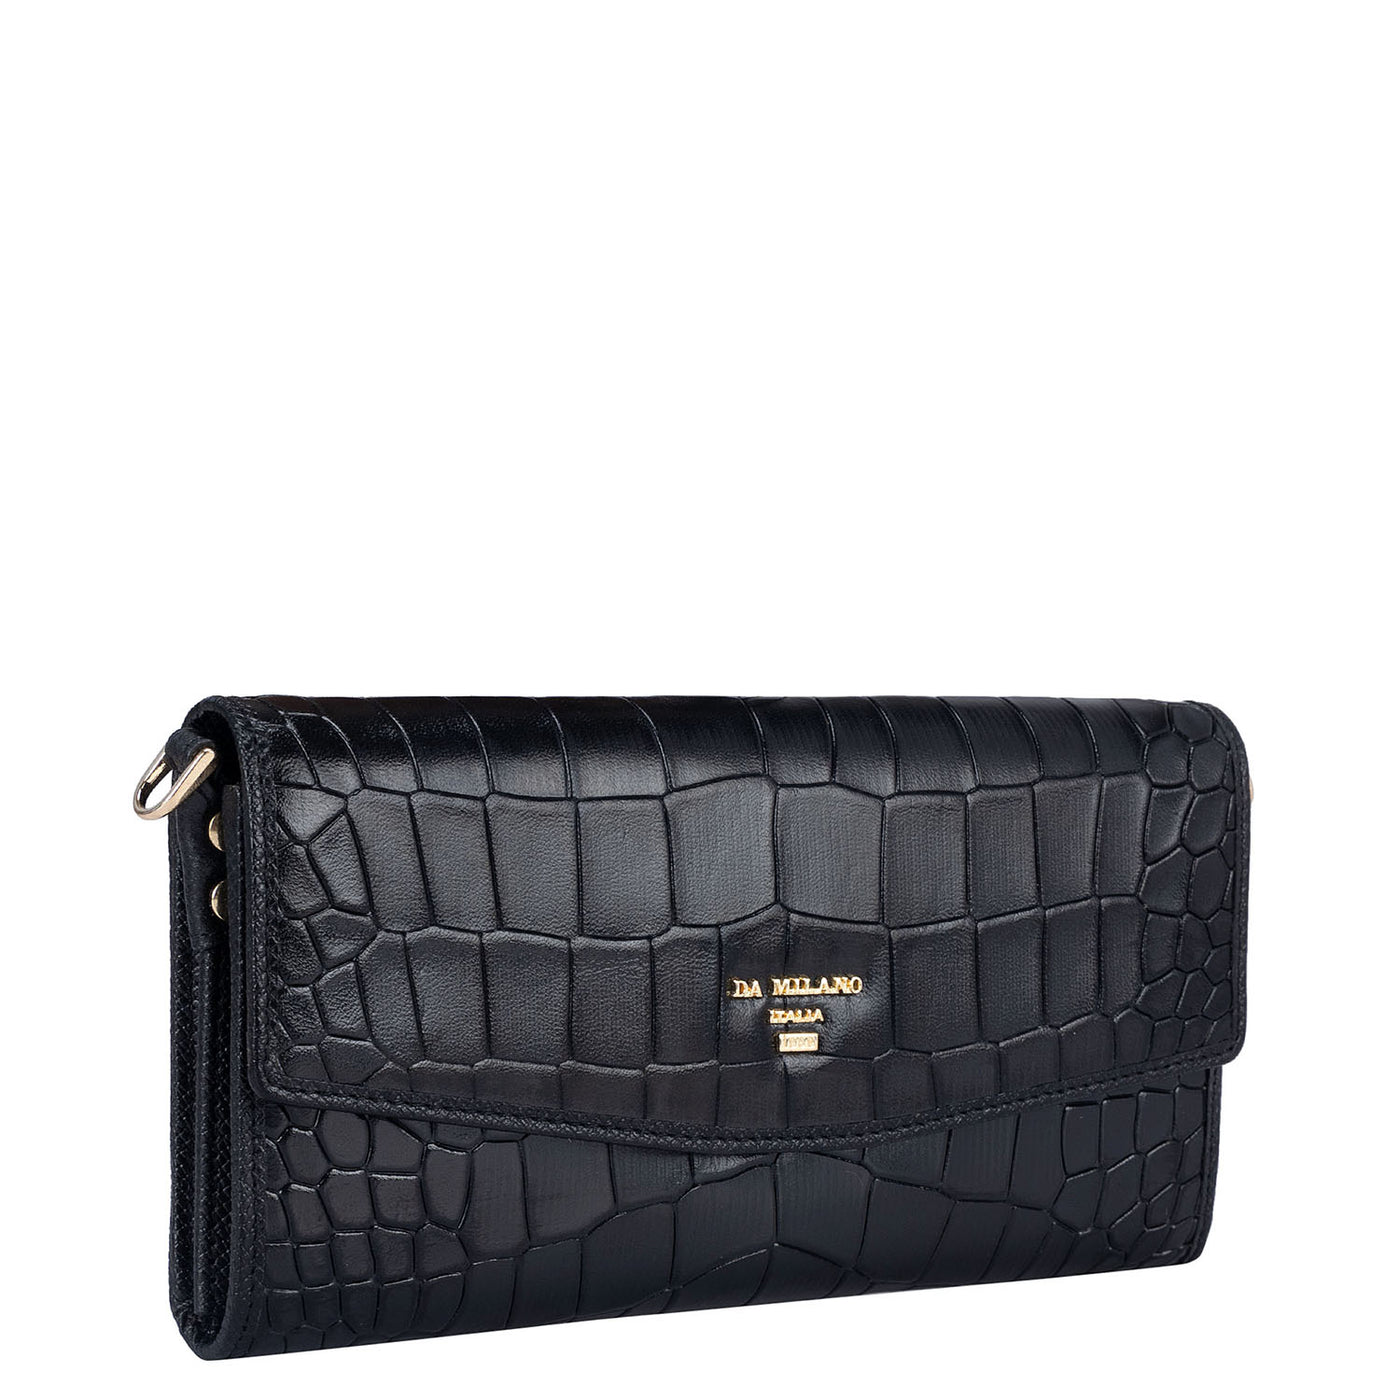 Croco Leather Ladies Sling Wallet - Black